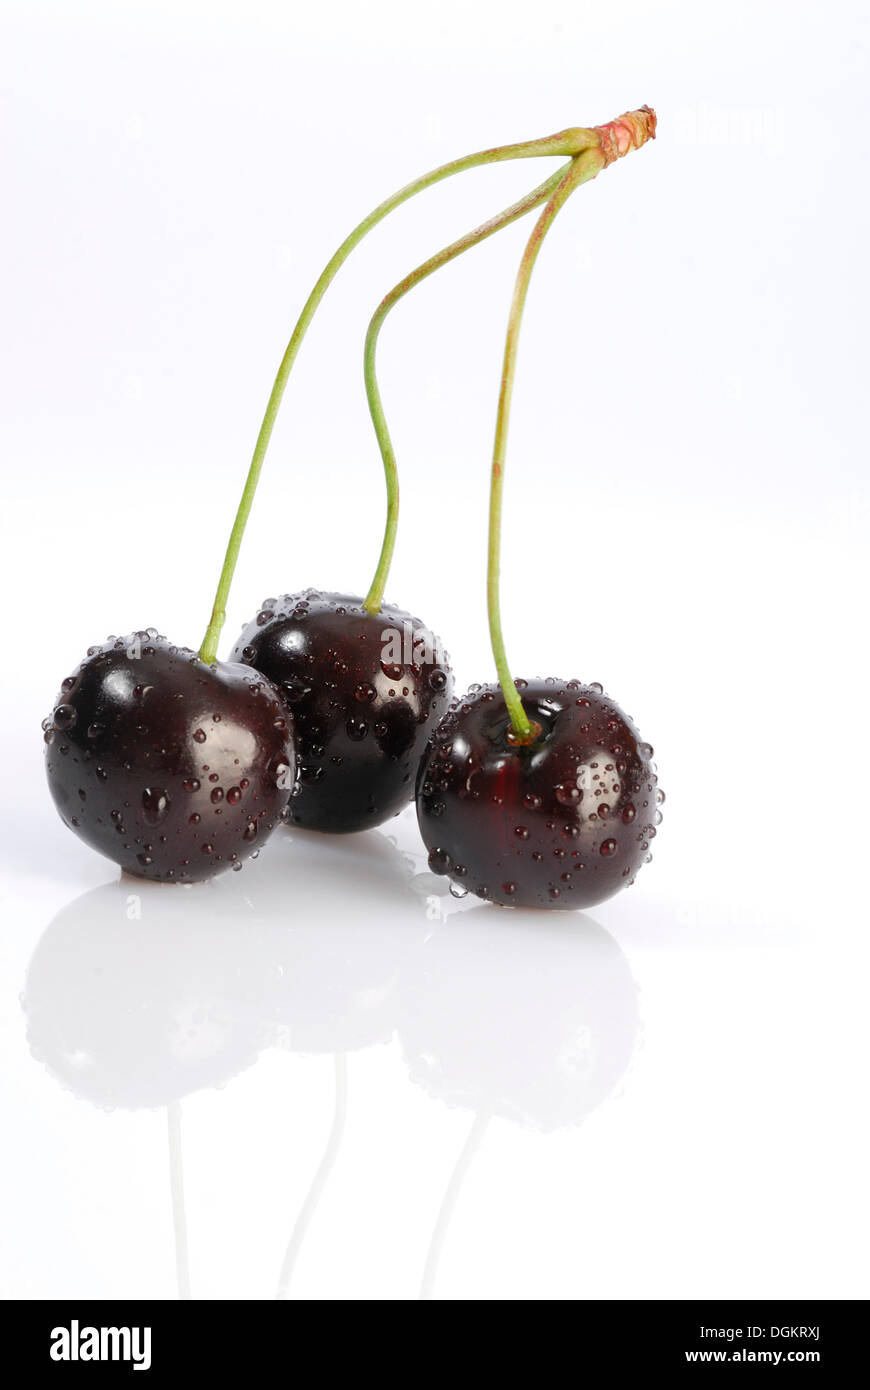 Three cherries, Black cherry or Wild cherry (Prunus avium) Stock Photo